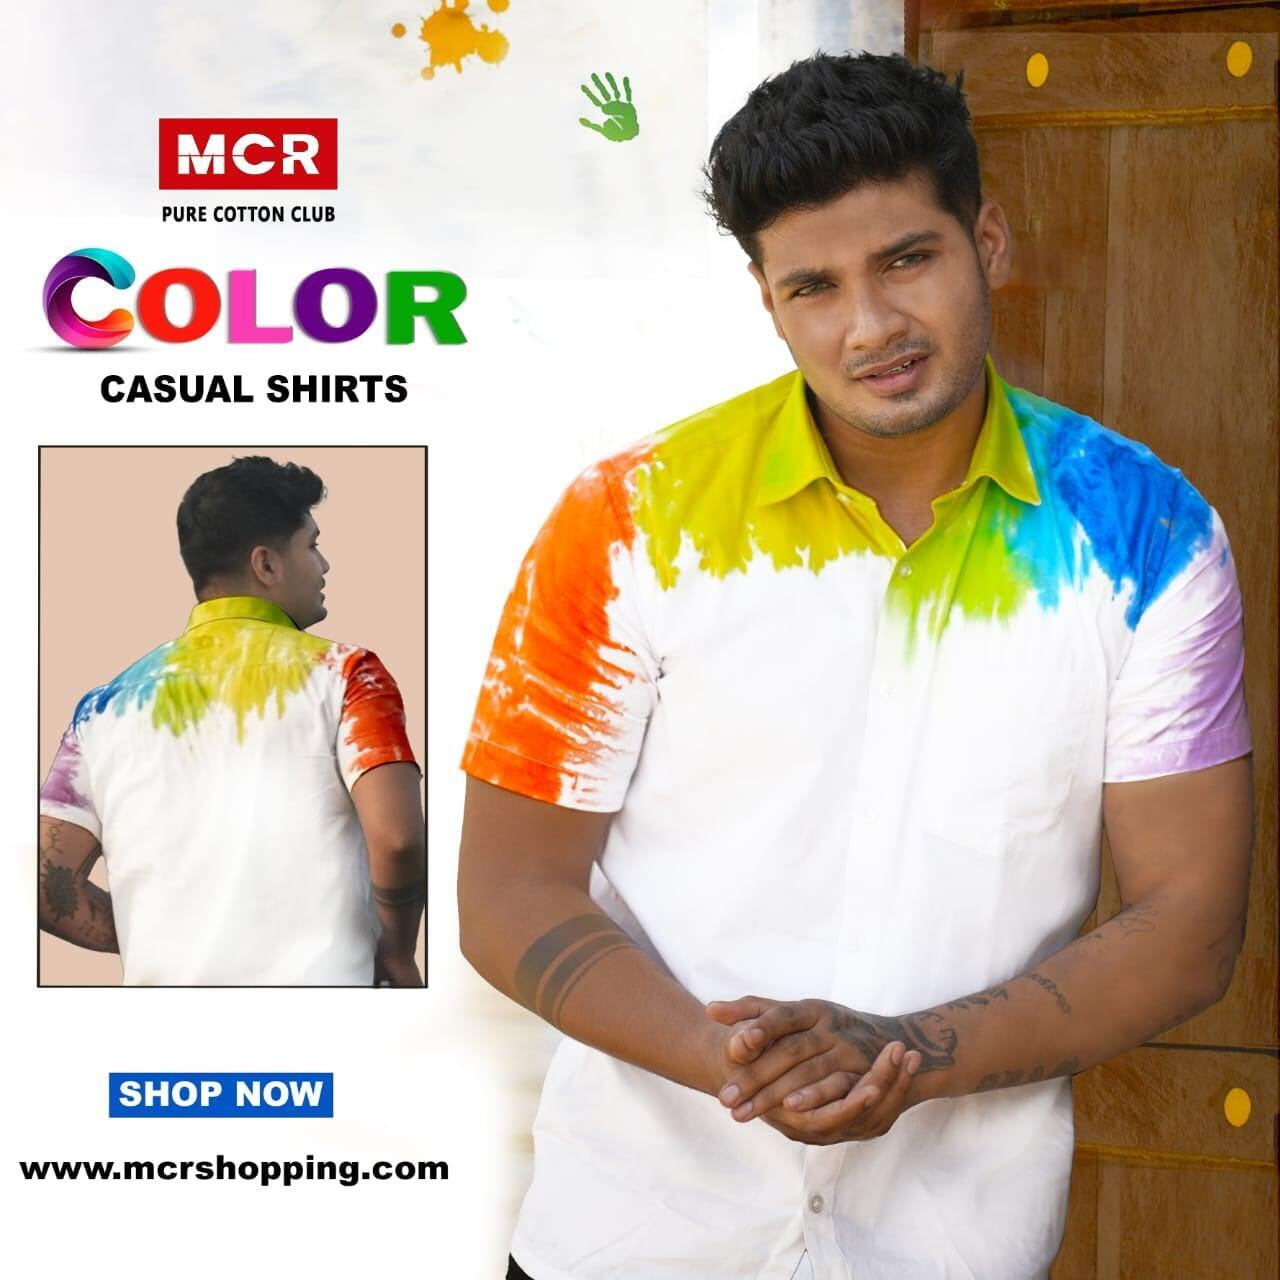 color shirts, casual shirts